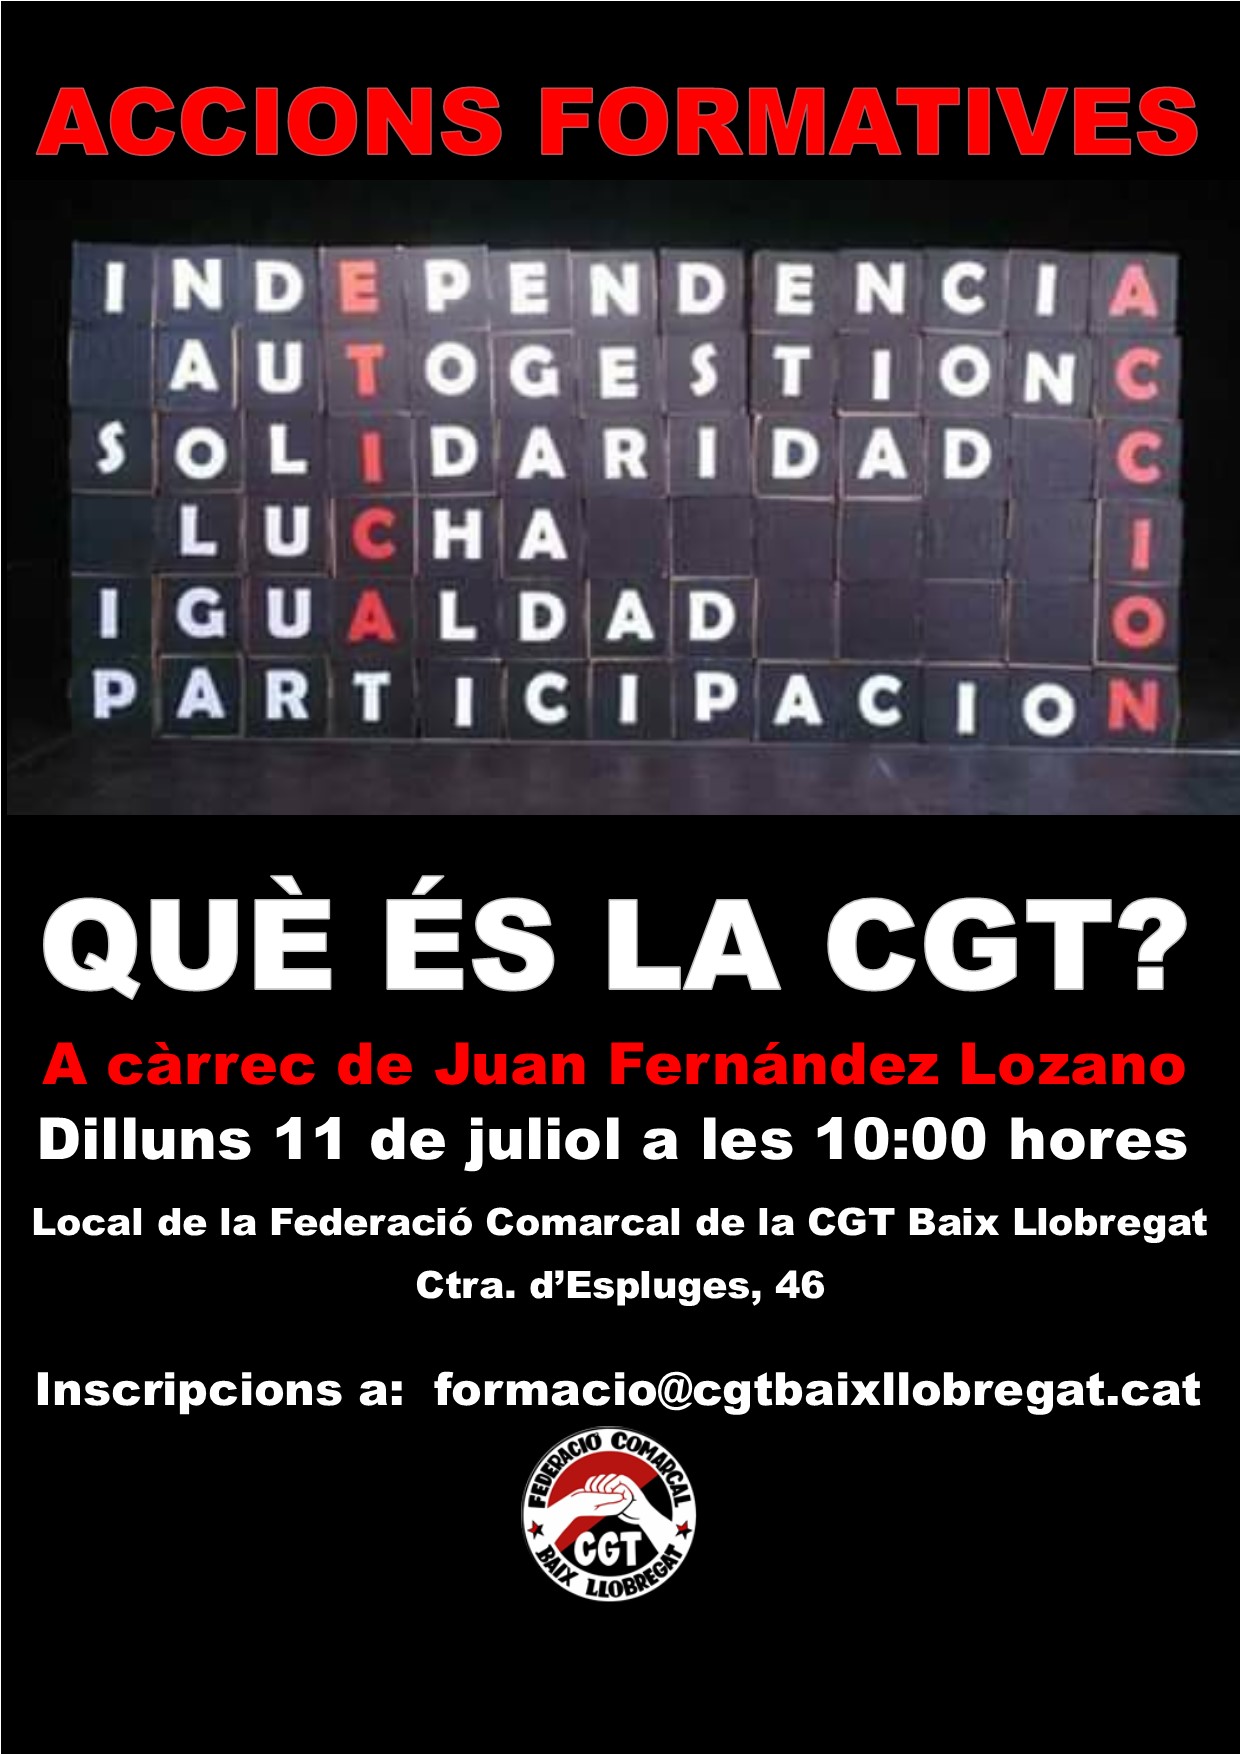 Formació sindical CGT Baix Llobregat 11 juliol 2022